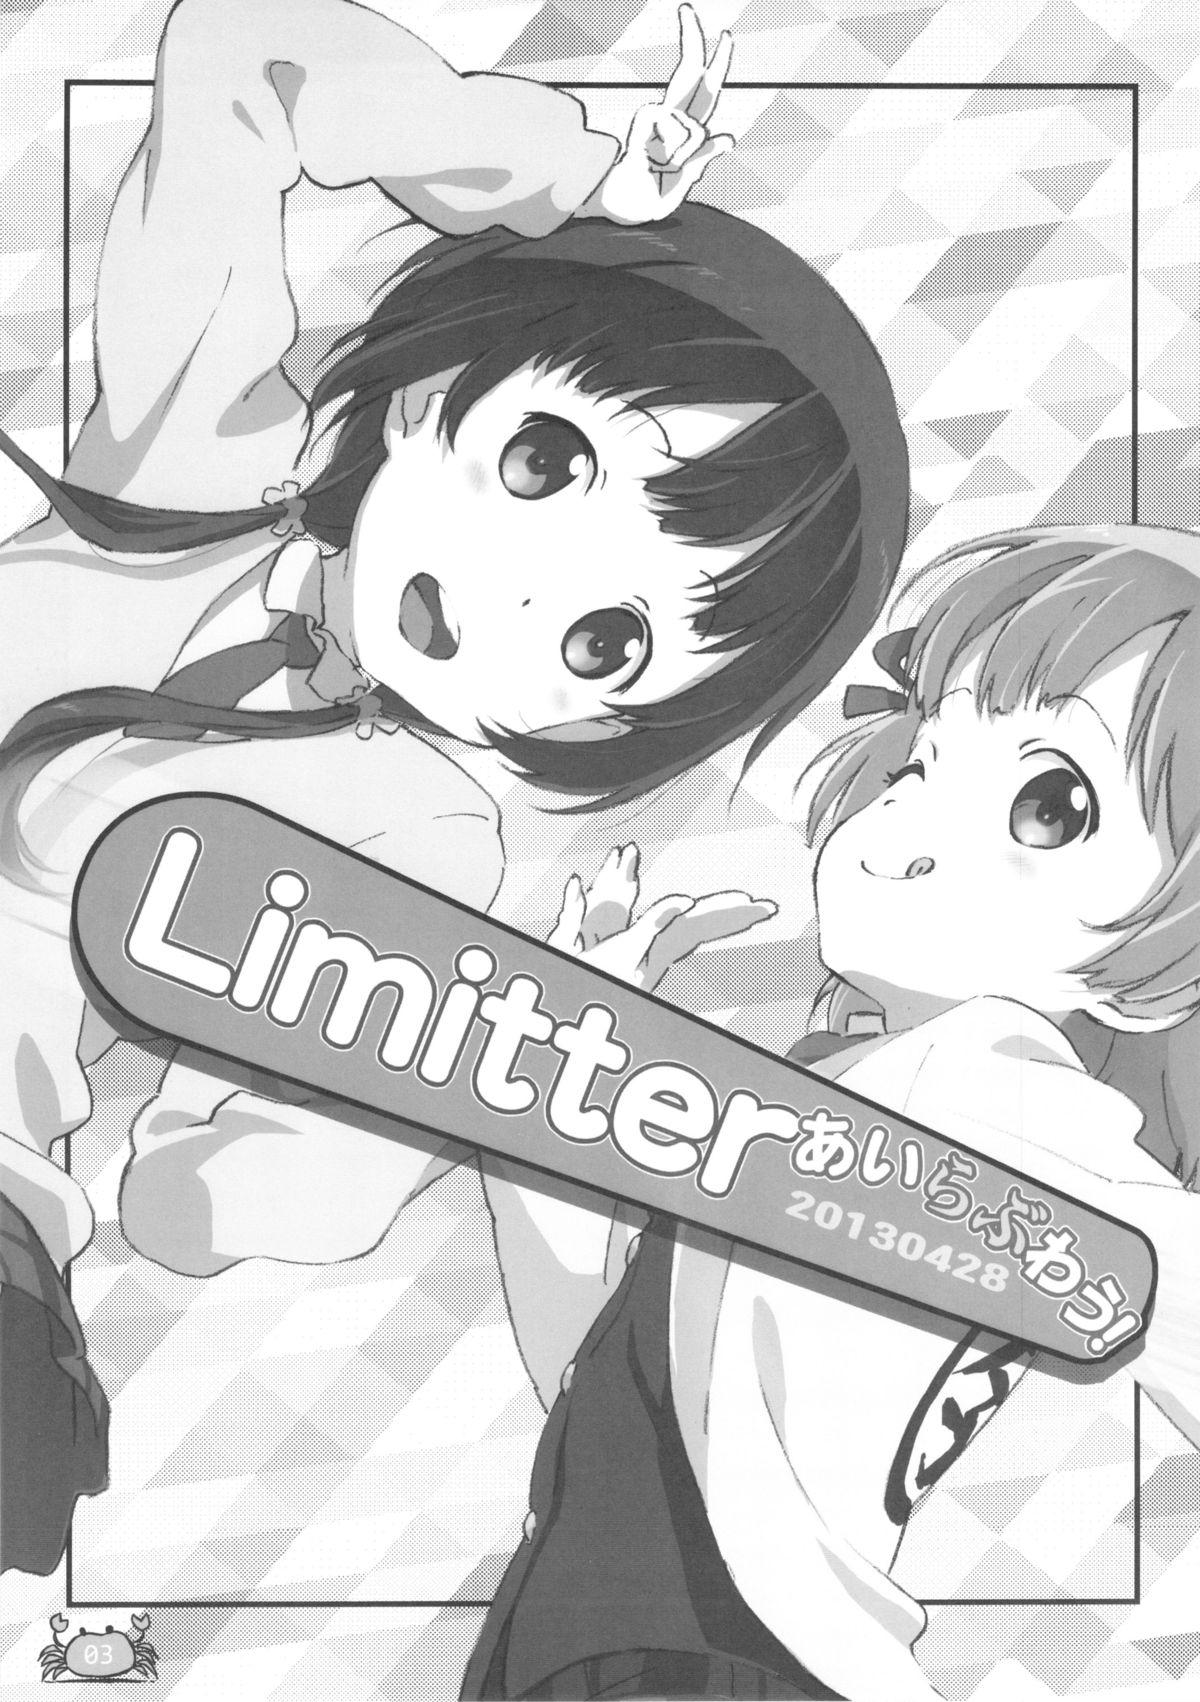 Fun Limitter I Love Wau! 20130428 - Aiura Bang Bros - Page 3